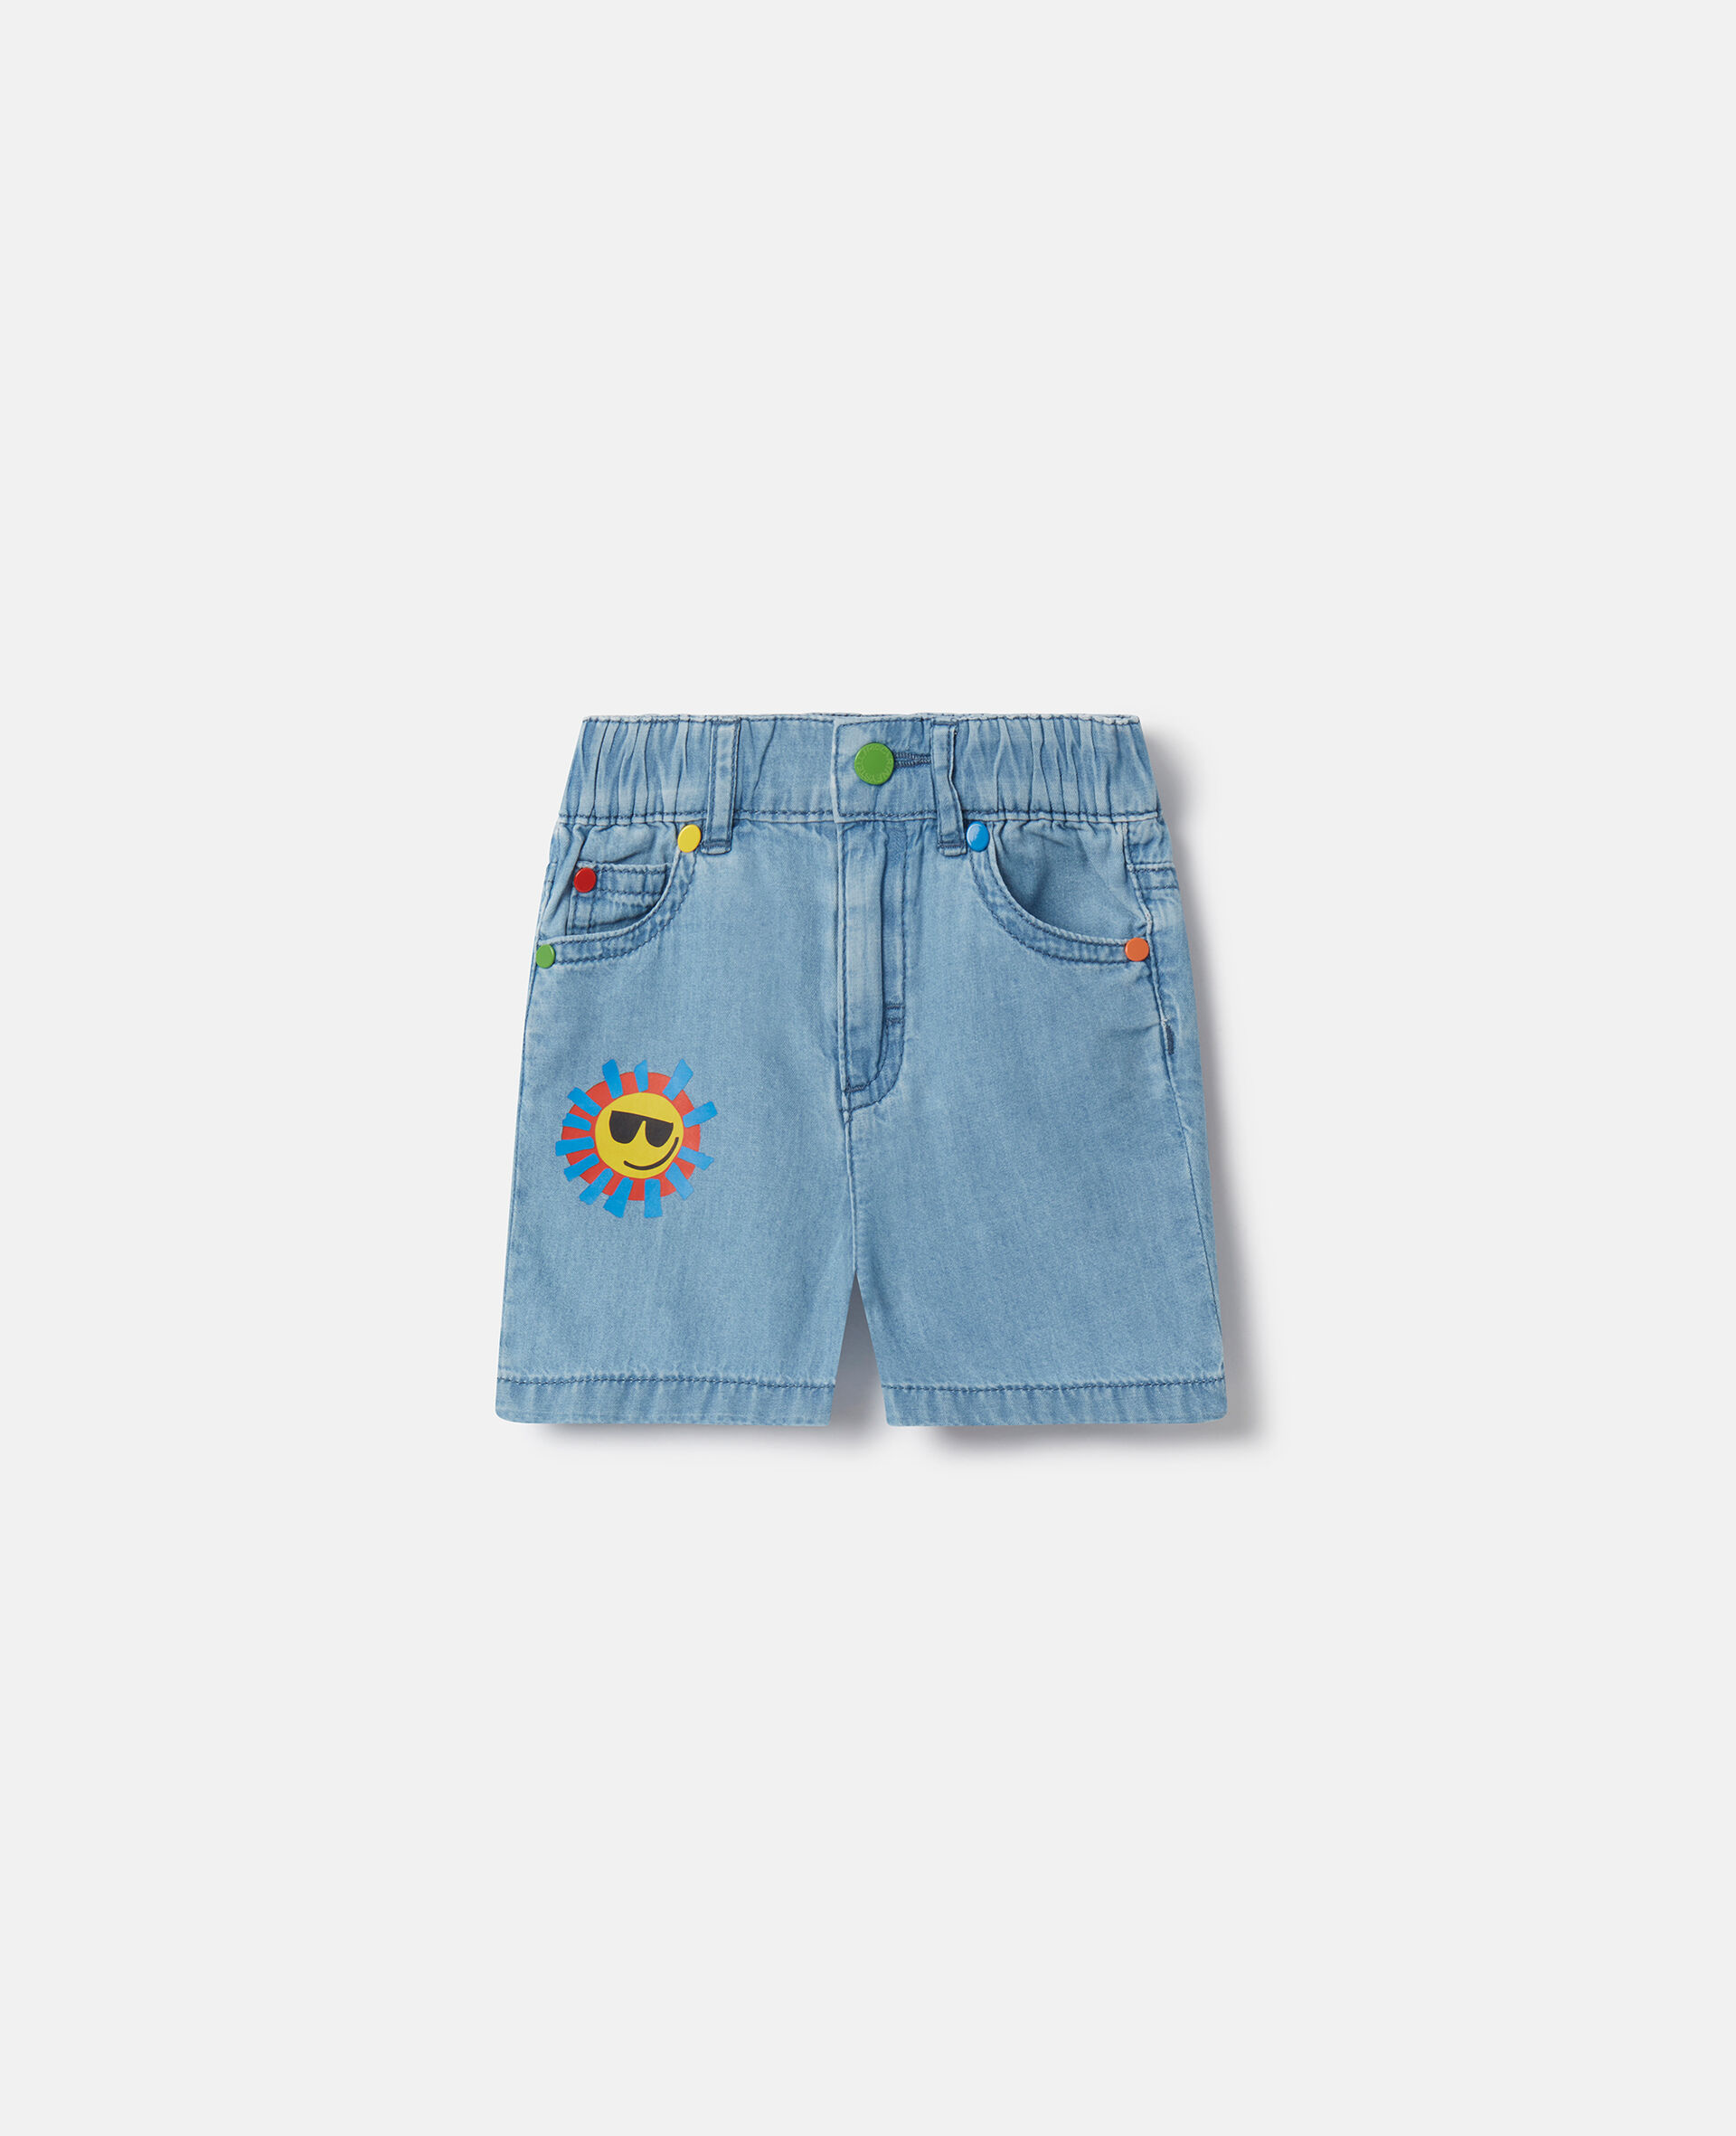 Sunshine Print Denim Shorts-蓝色-medium